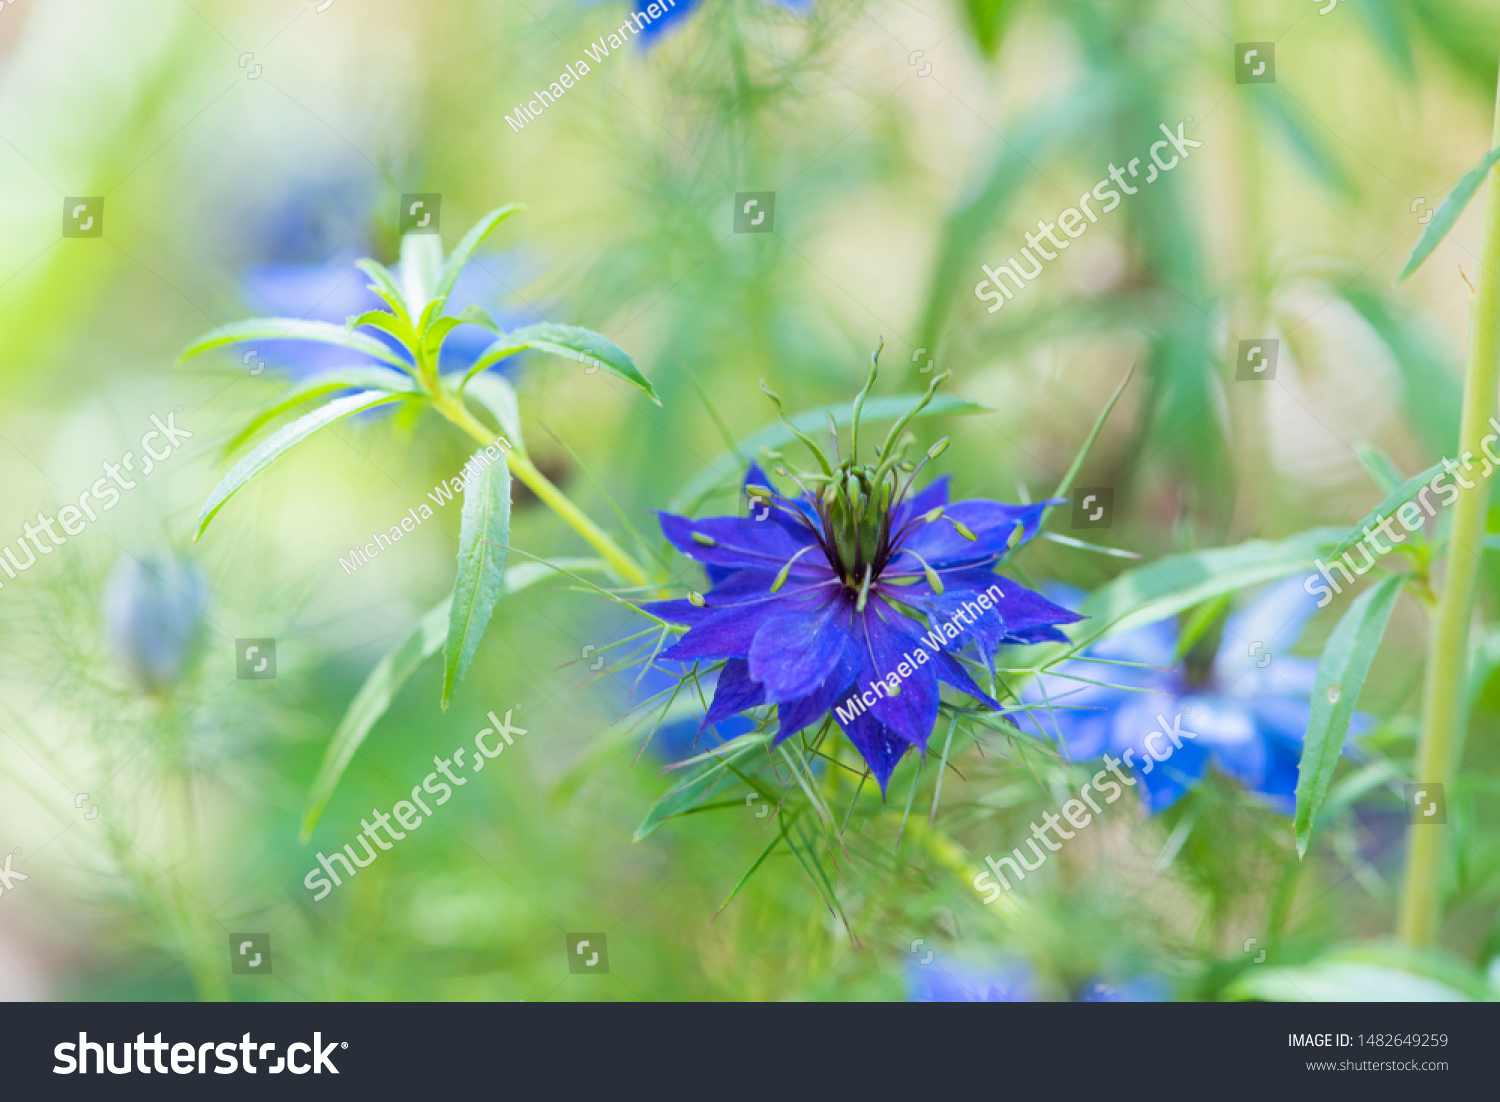 Loveinthemist Flower Roman Coriander Flower Wild Stock Photo Edit Now 1482649259